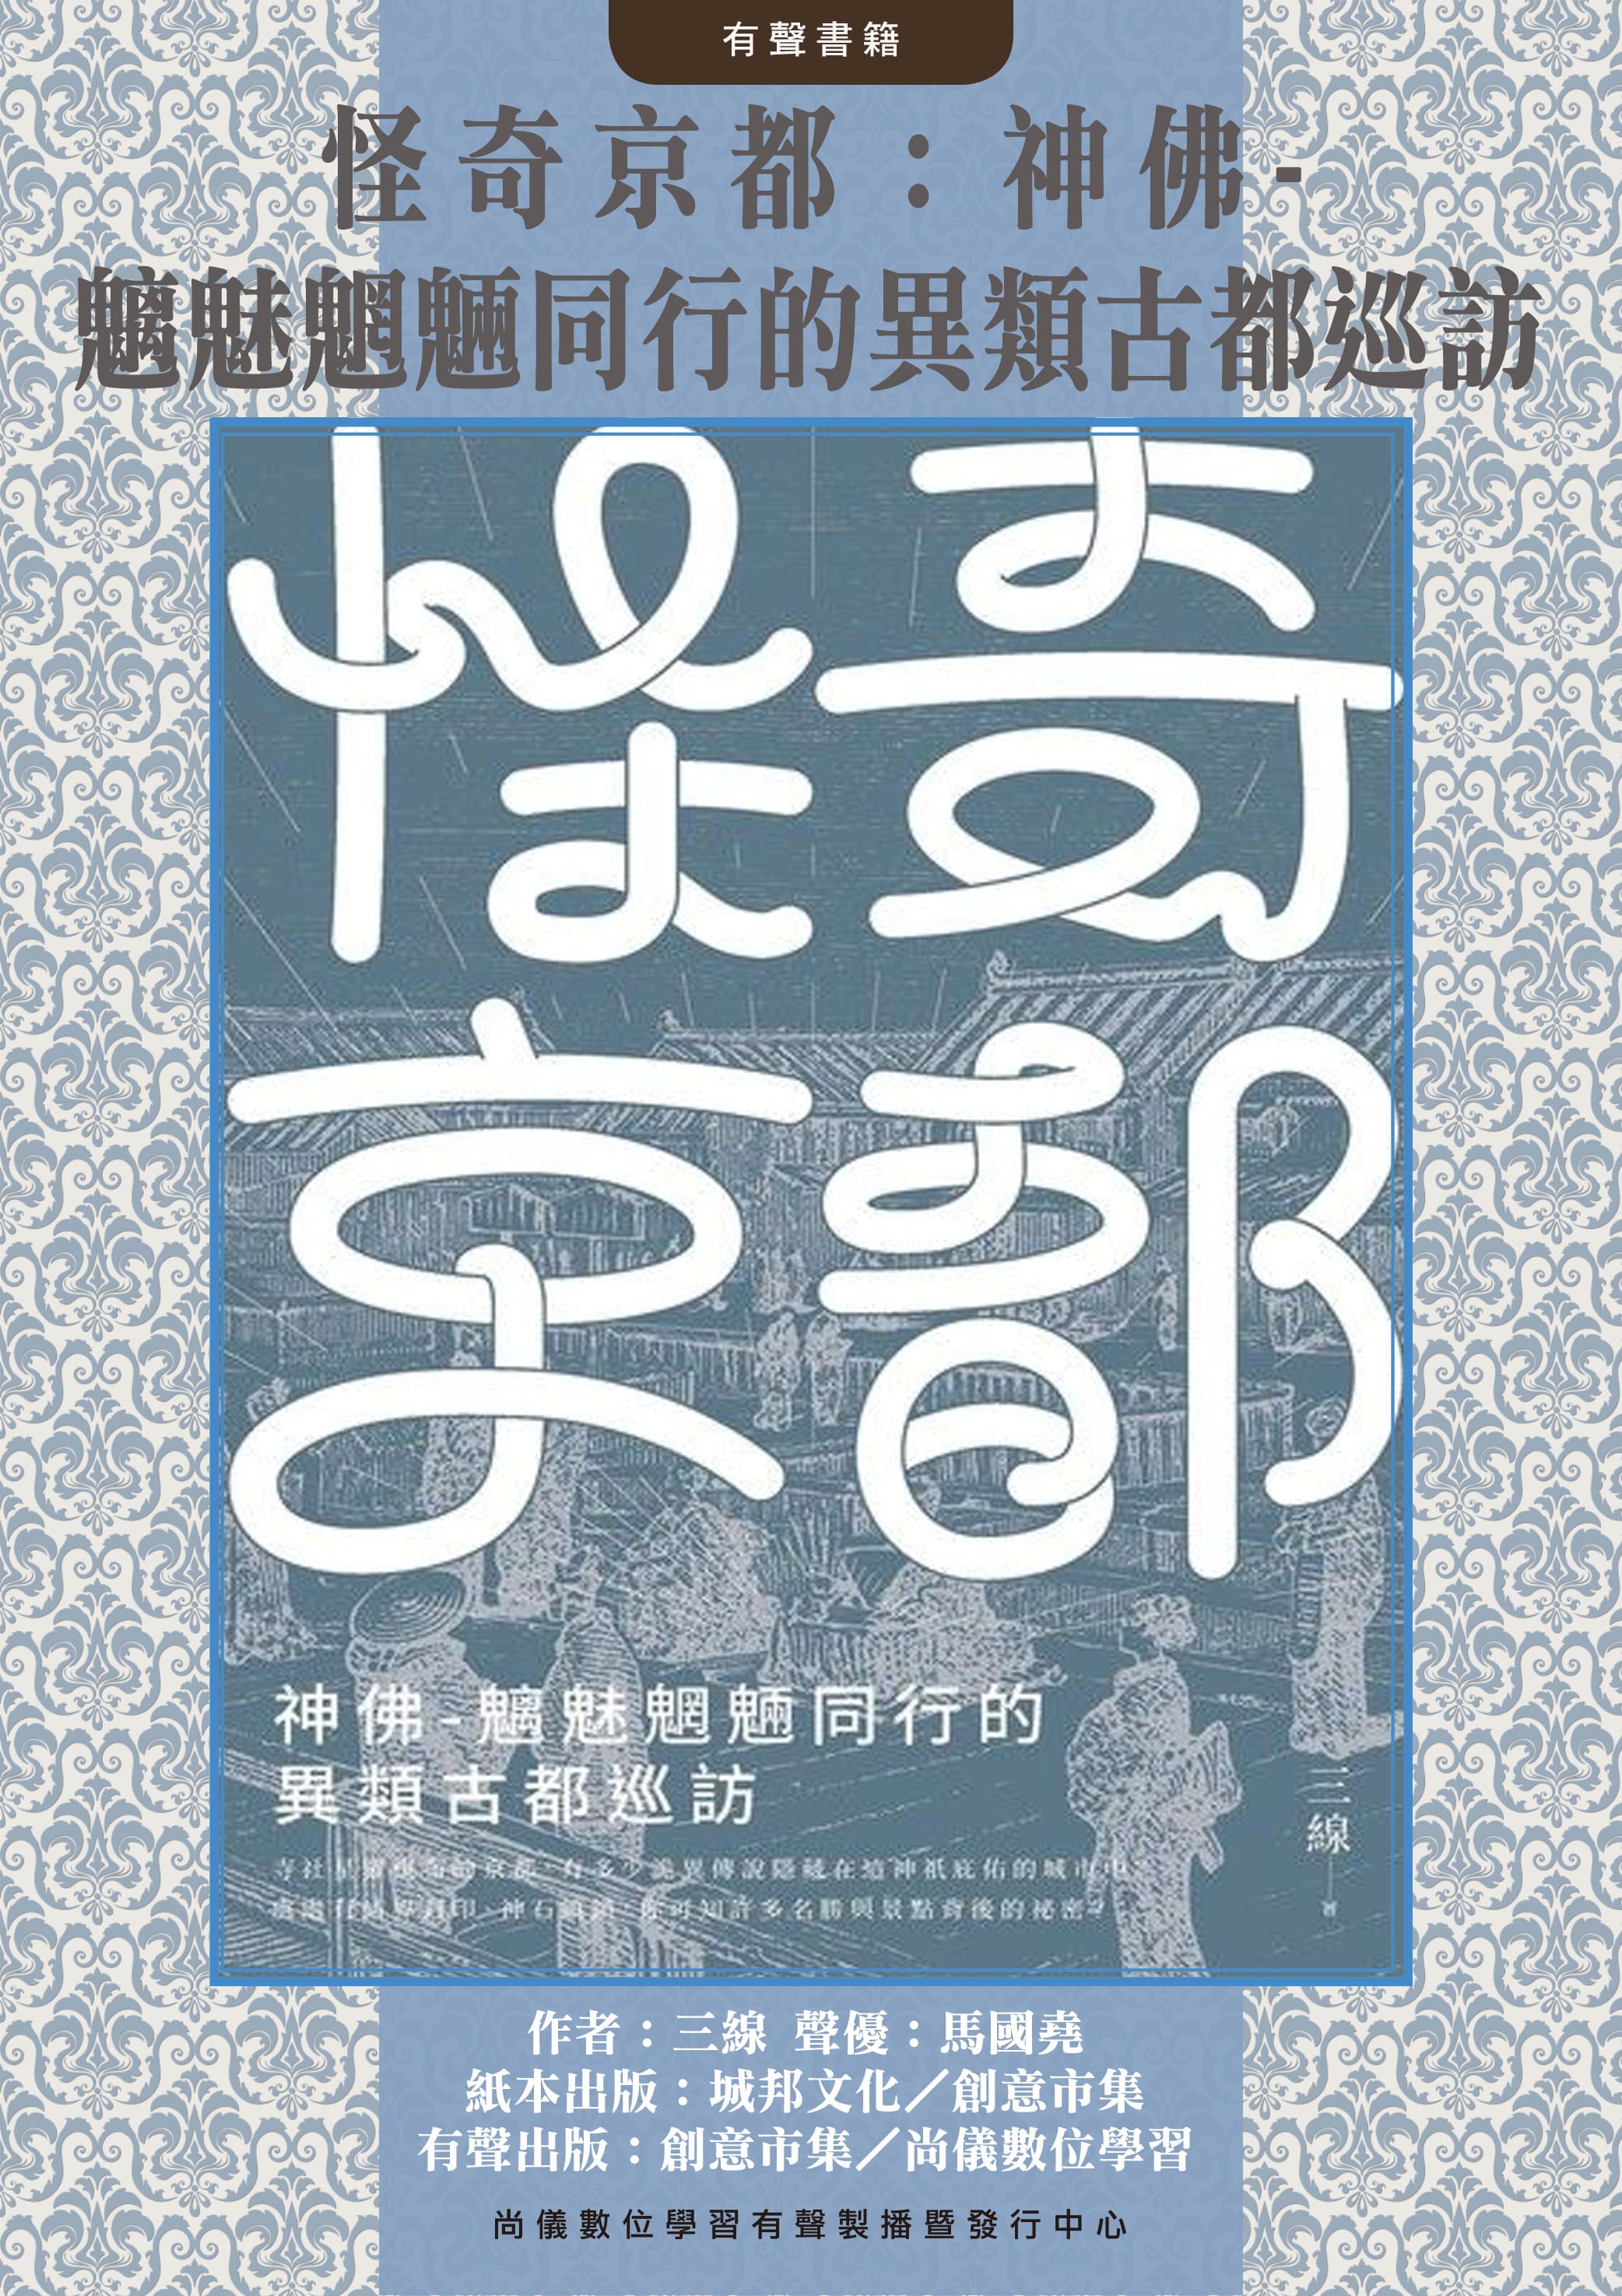 怪奇京都：神佛-魑魅魍魎同行的異類古都巡訪封面圖